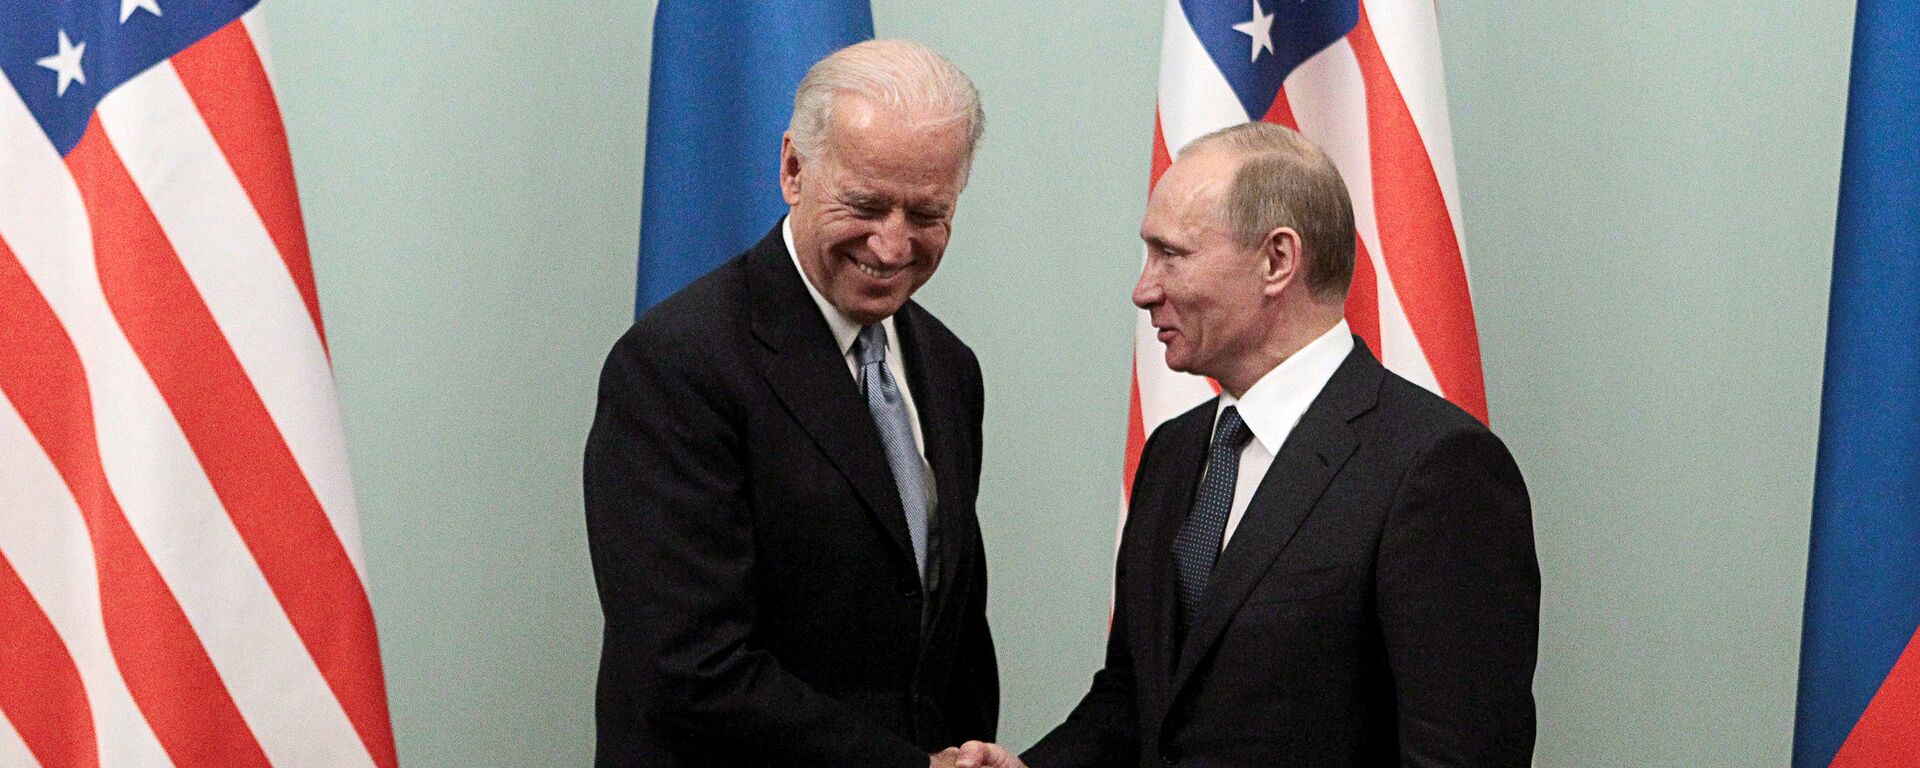 Rusya Devlet Başkanı Vladimir Putin ve ABD Başkanı Joe Biden - Sputnik Türkiye, 1920, 04.05.2021